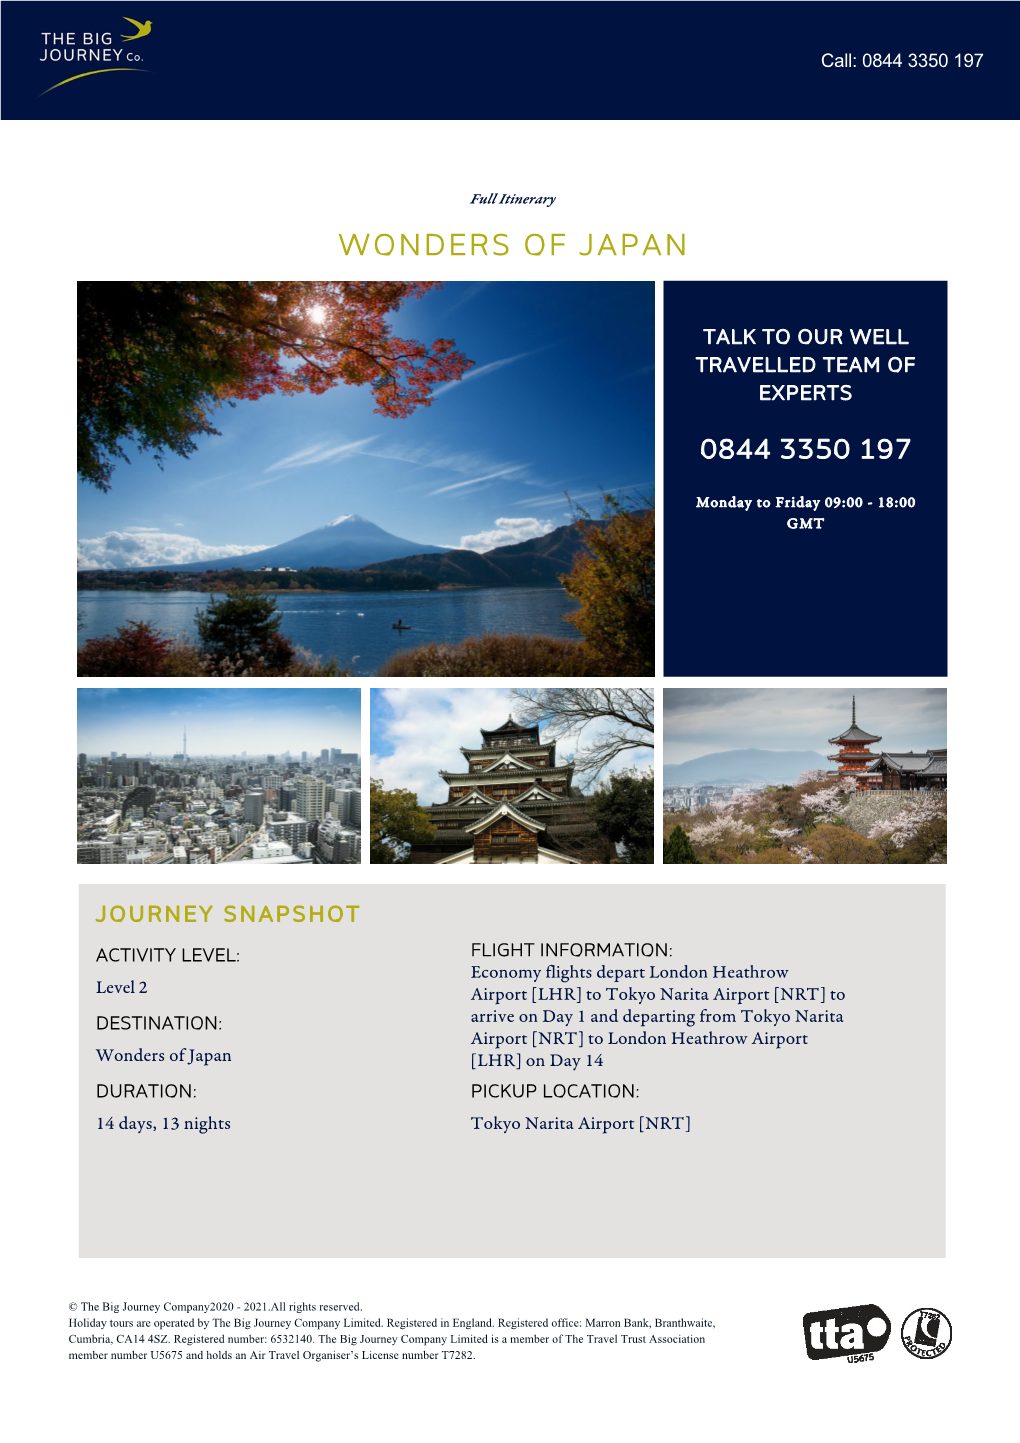 Wonders of Japan